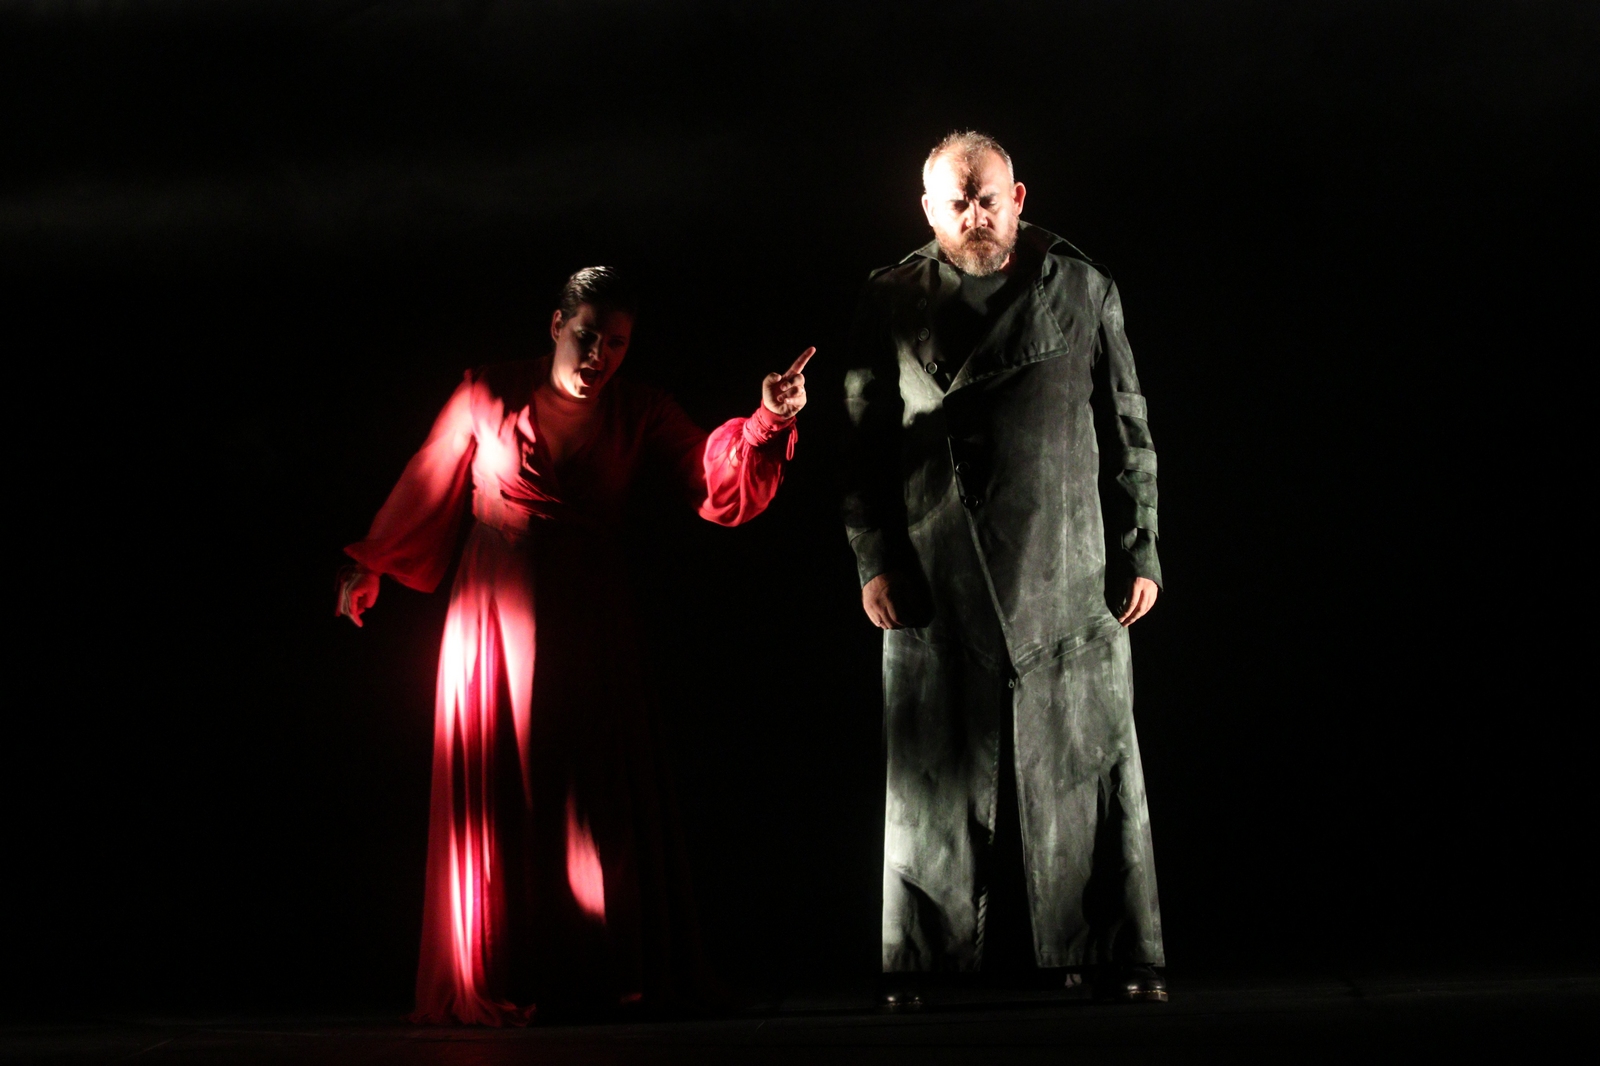 Prije puta u Grčku, obnovljeni "Otello" otvara opernu sezonu u riječkom "Zajcu"